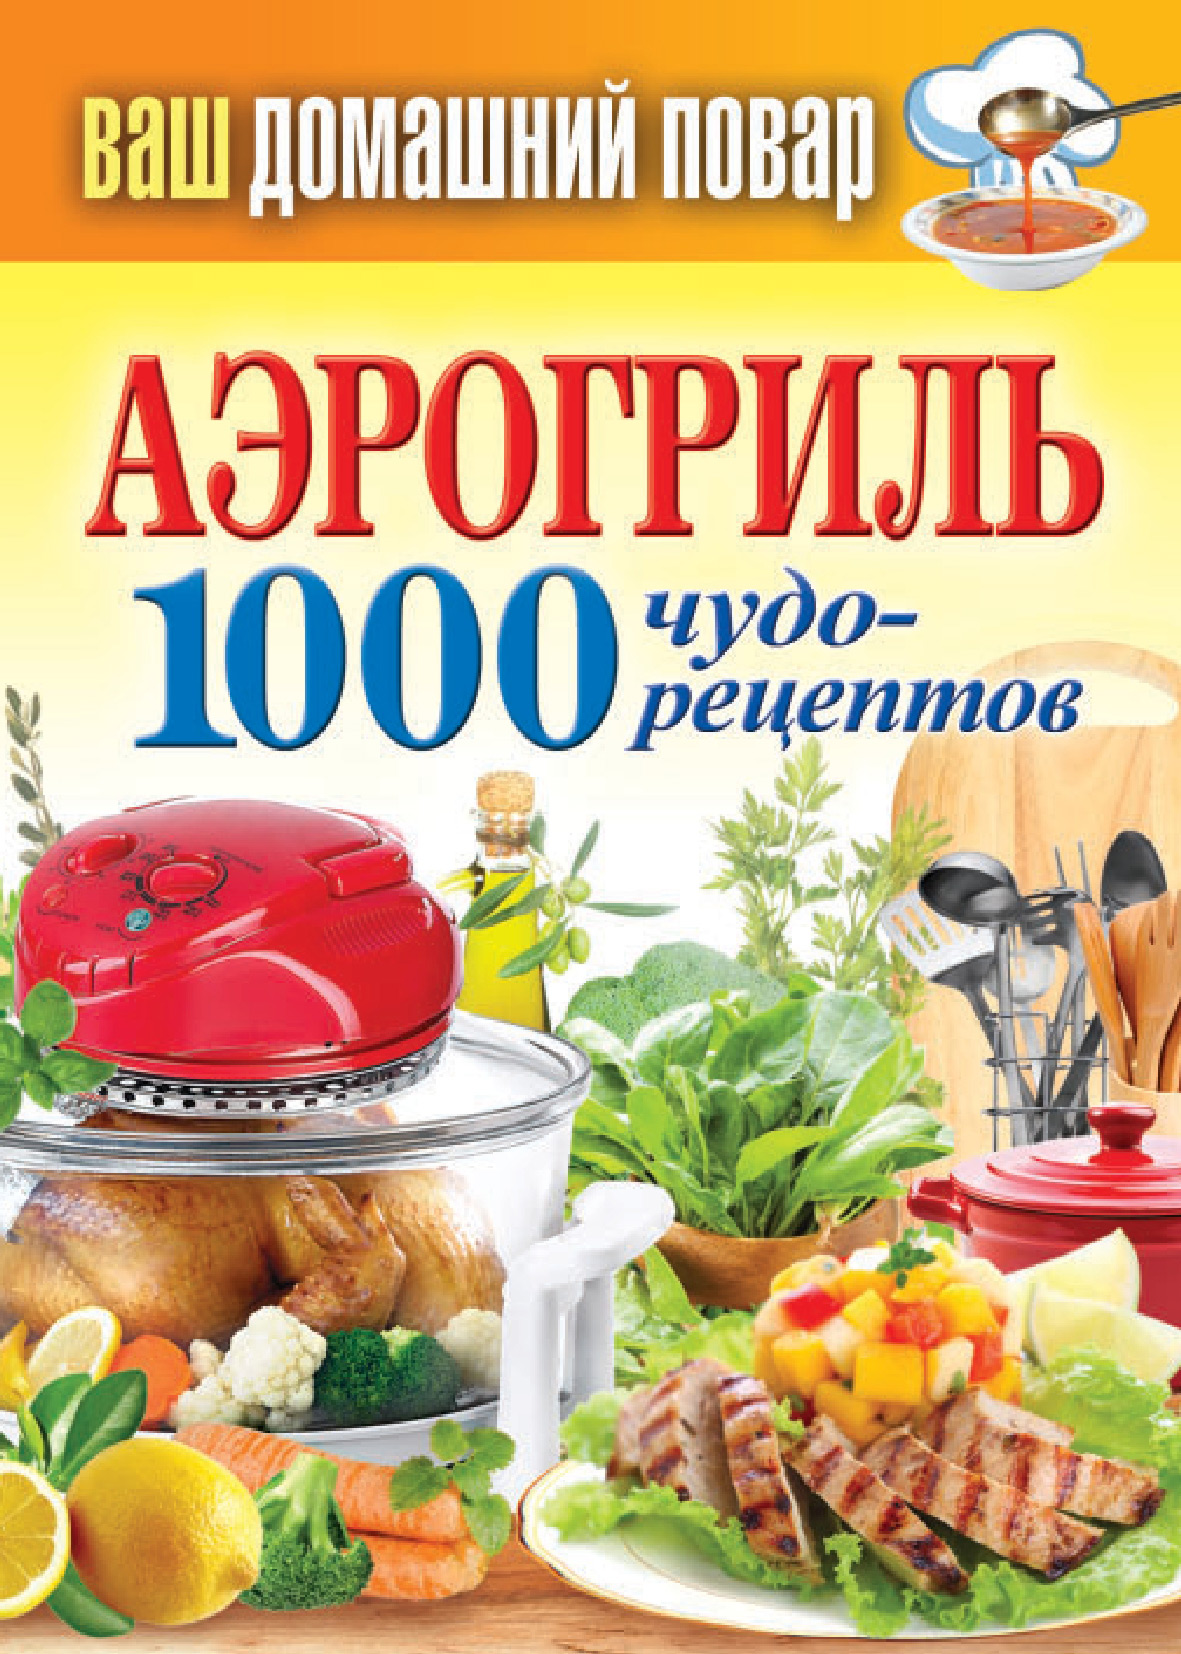 Книга Аэрогриль. 1000 чудо-рецептов из серии Ваш домашний повар, созданная Сергей Кашин, может относится к жанру Кулинария. Стоимость электронной книги Аэрогриль. 1000 чудо-рецептов с идентификатором 6371323 составляет 59.00 руб.